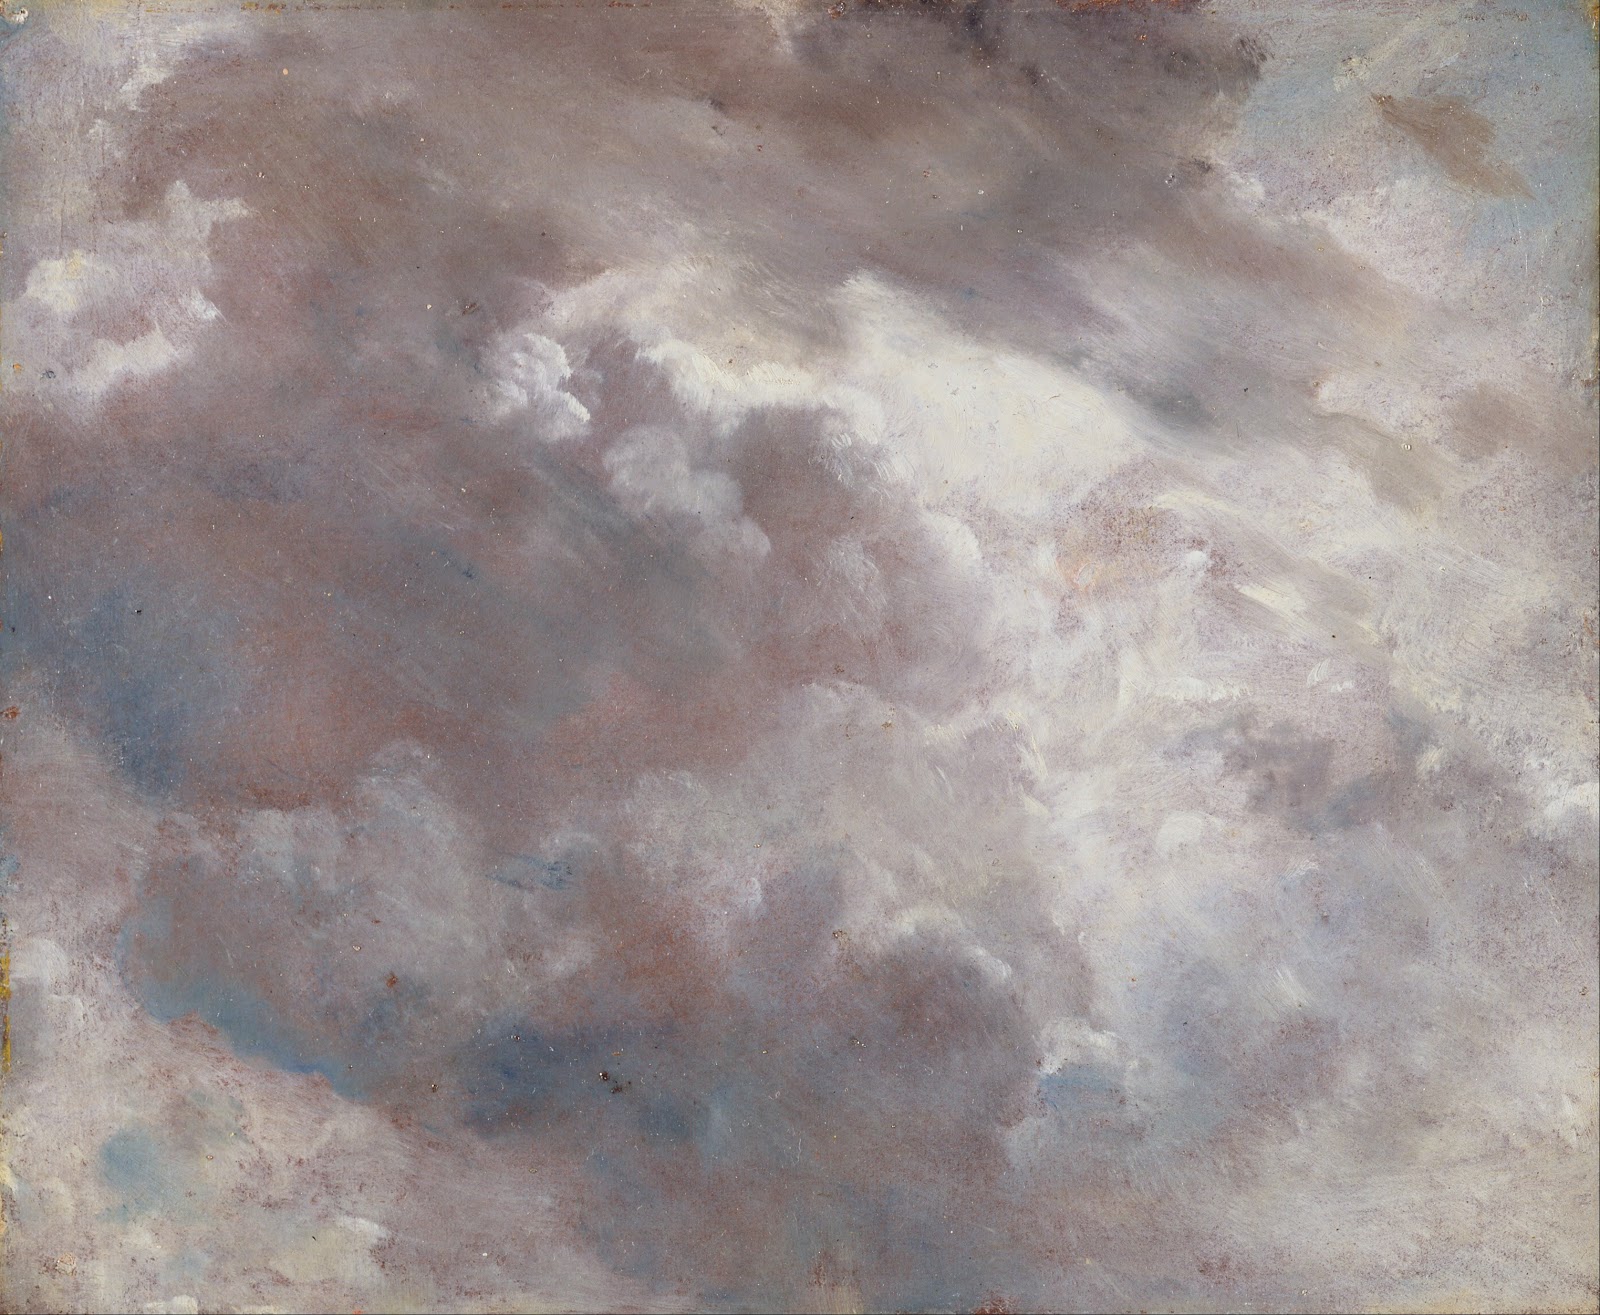 John+Constable-1776-1837 (46).jpg